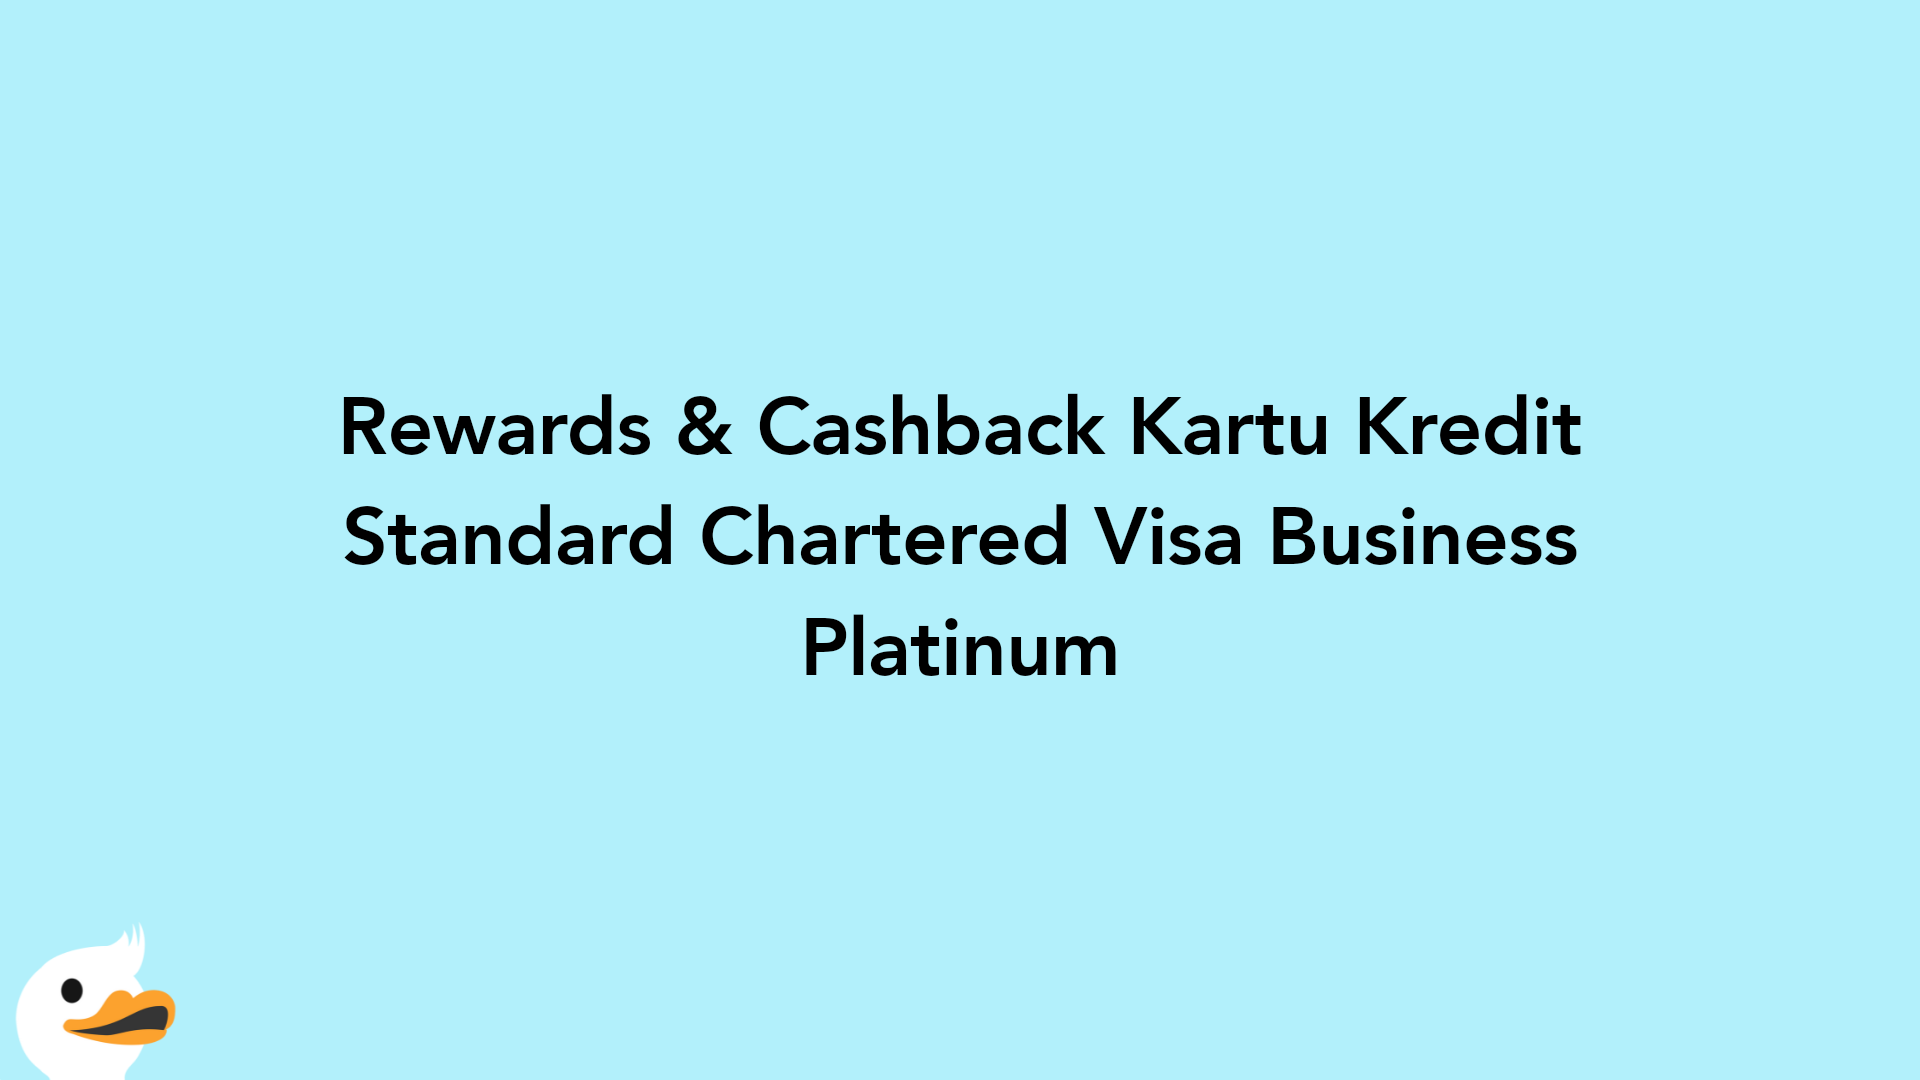 Rewards & Cashback Kartu Kredit Standard Chartered Visa Business Platinum